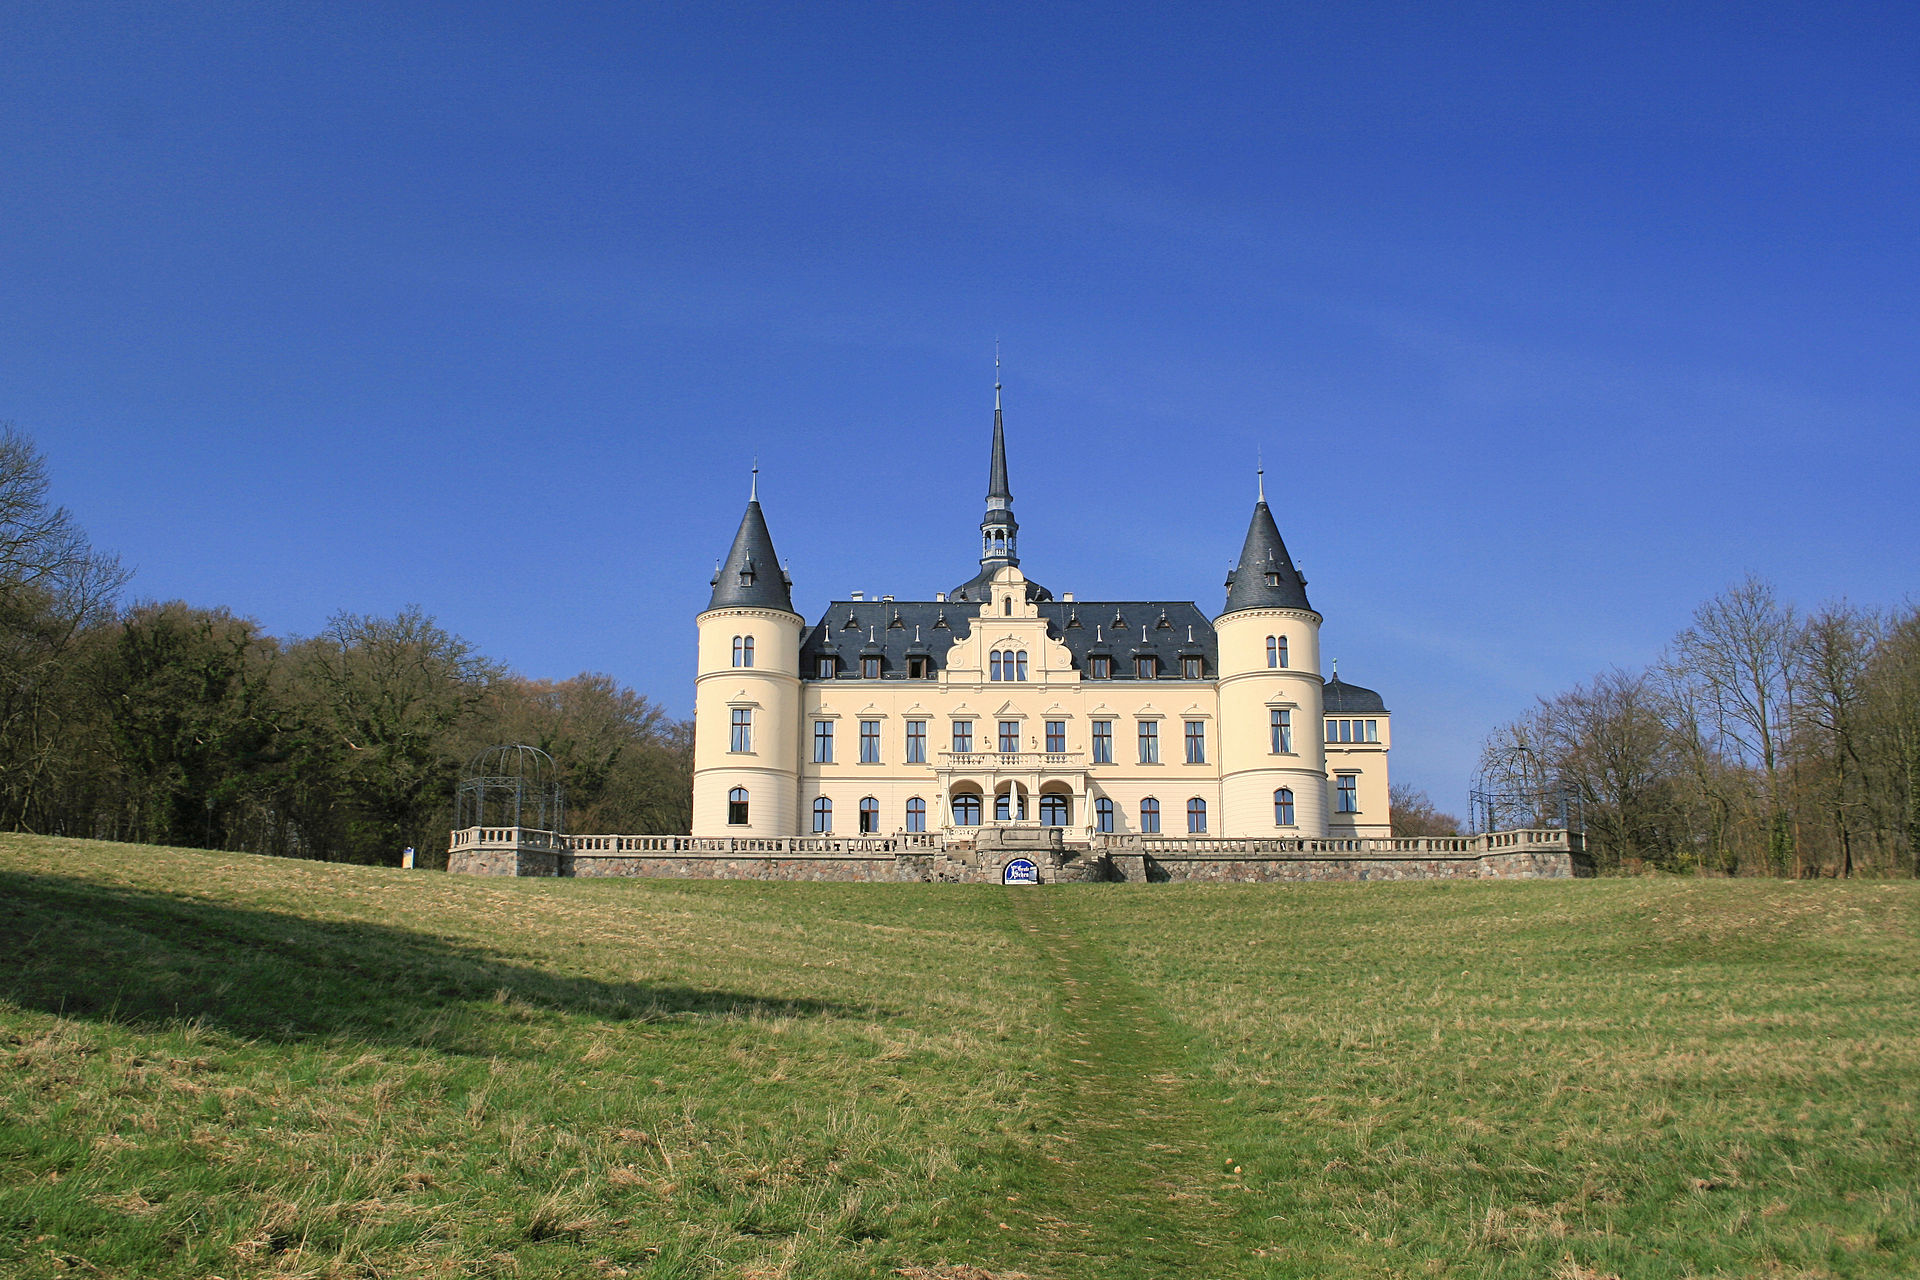 Ralsviek Castle